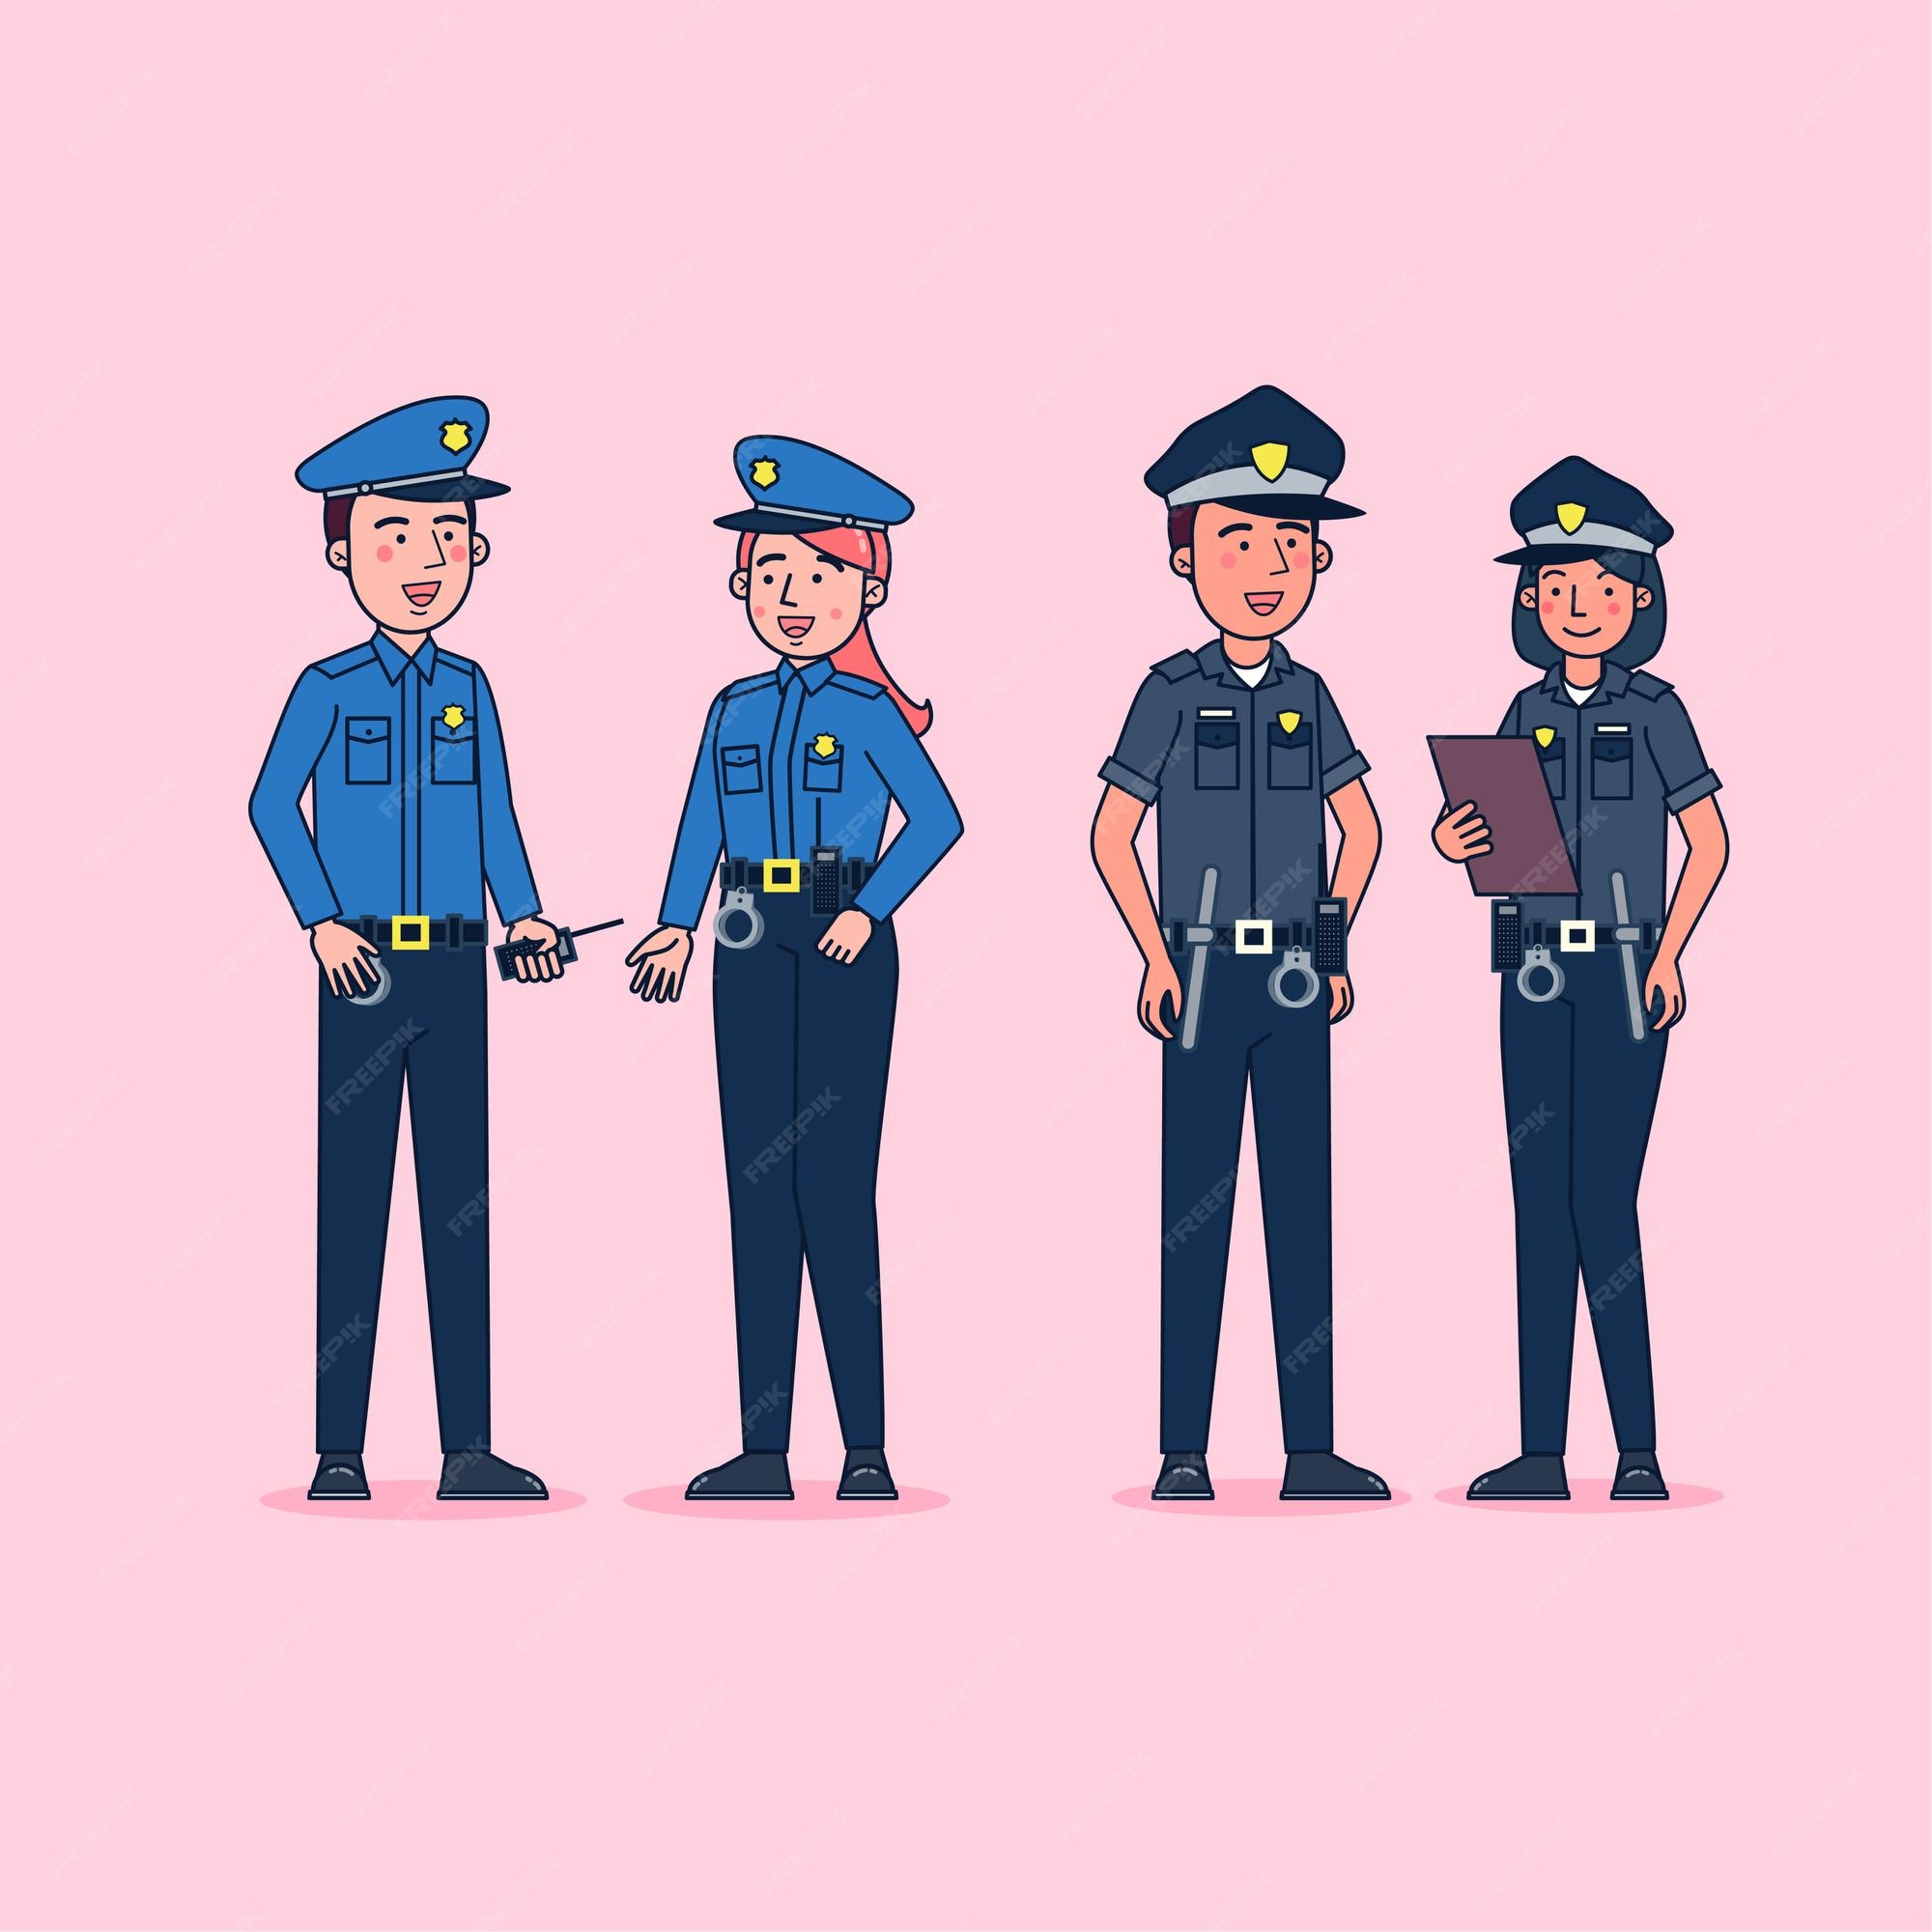 Vectores e ilustraciones de Uniforme policia para descargar gratis | Freepik